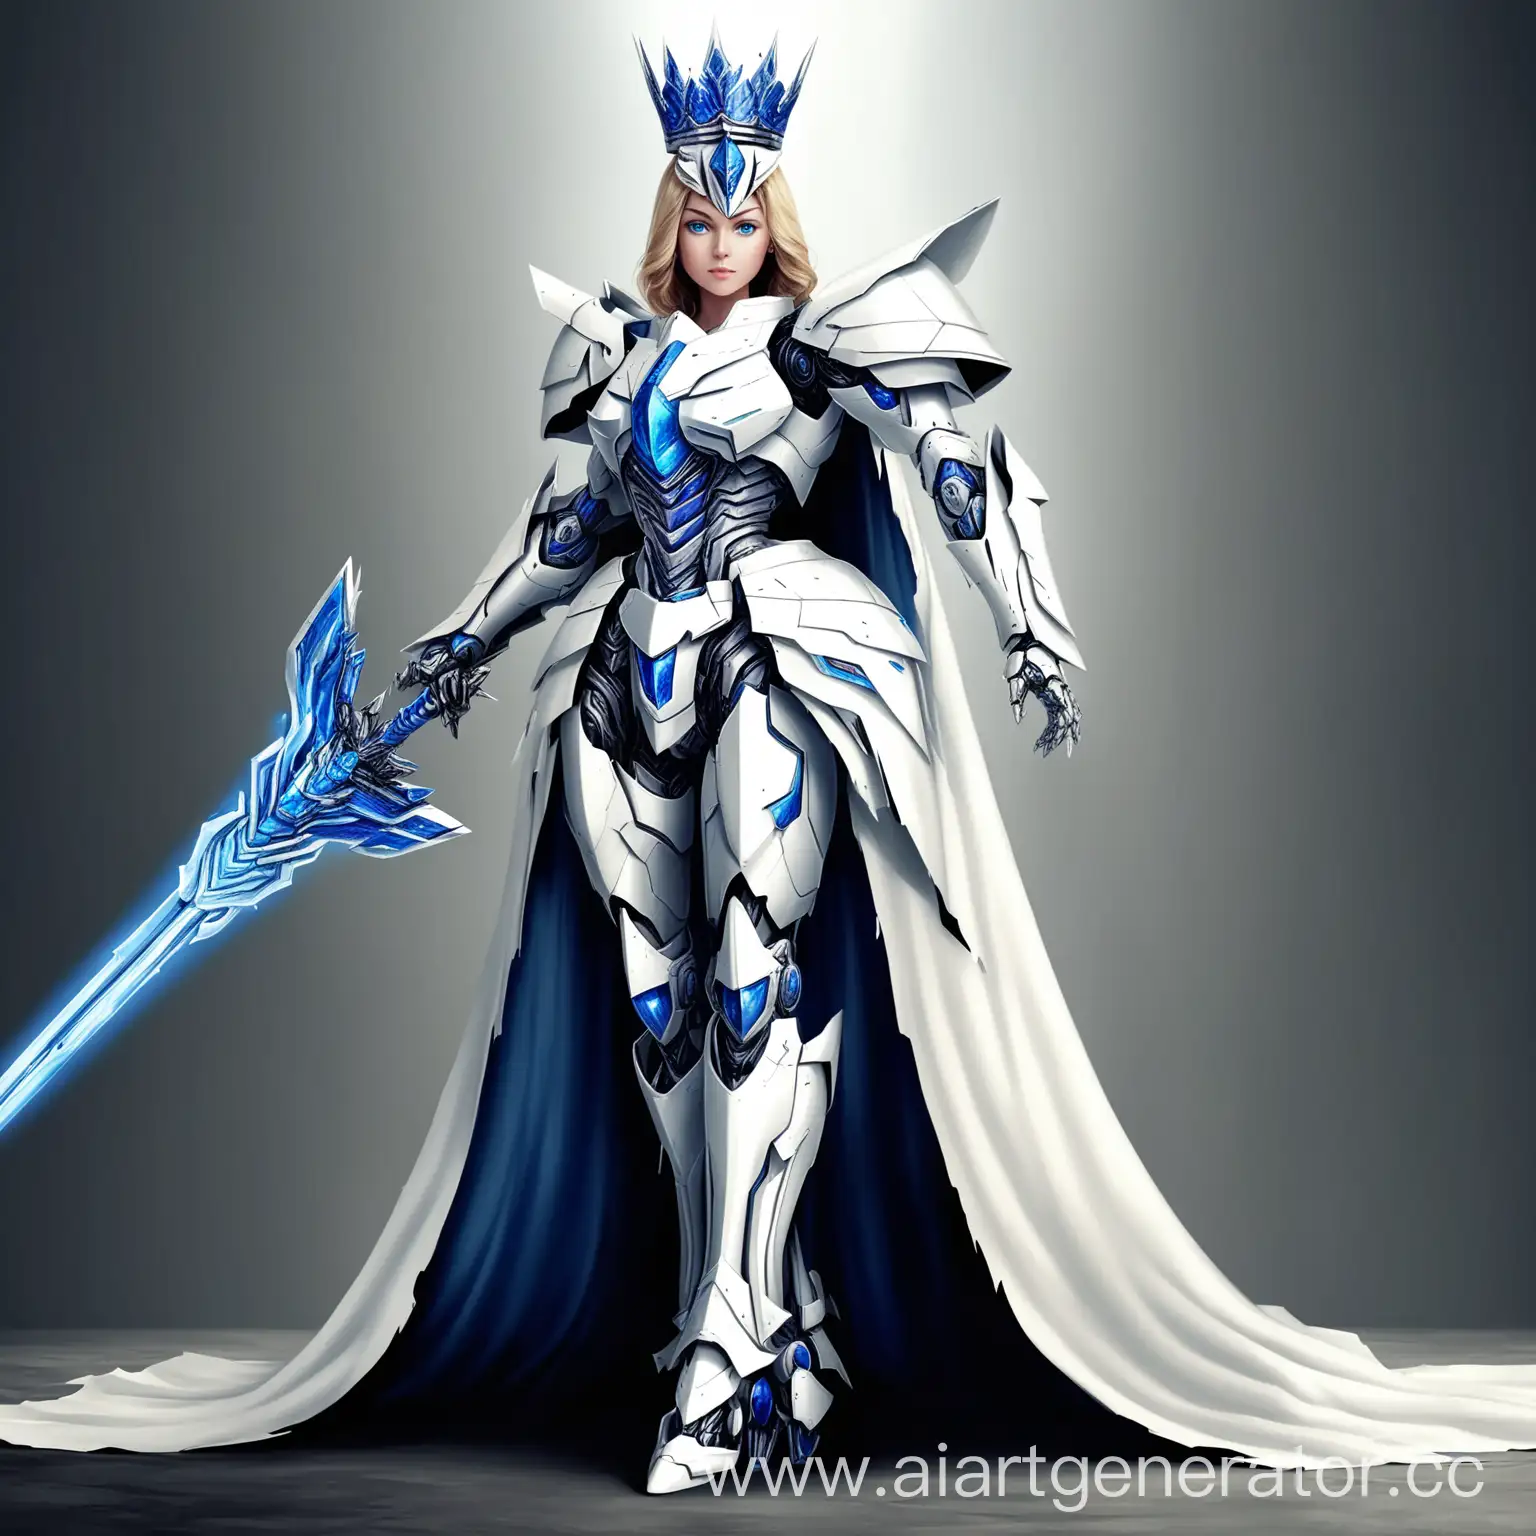 сгенерируй изображение девушки трансформера в белый доспехах, с голубыми глазами, на голове заострённая корона, в руках меч, сзади развивается плащ, стоит в позе рыцаря